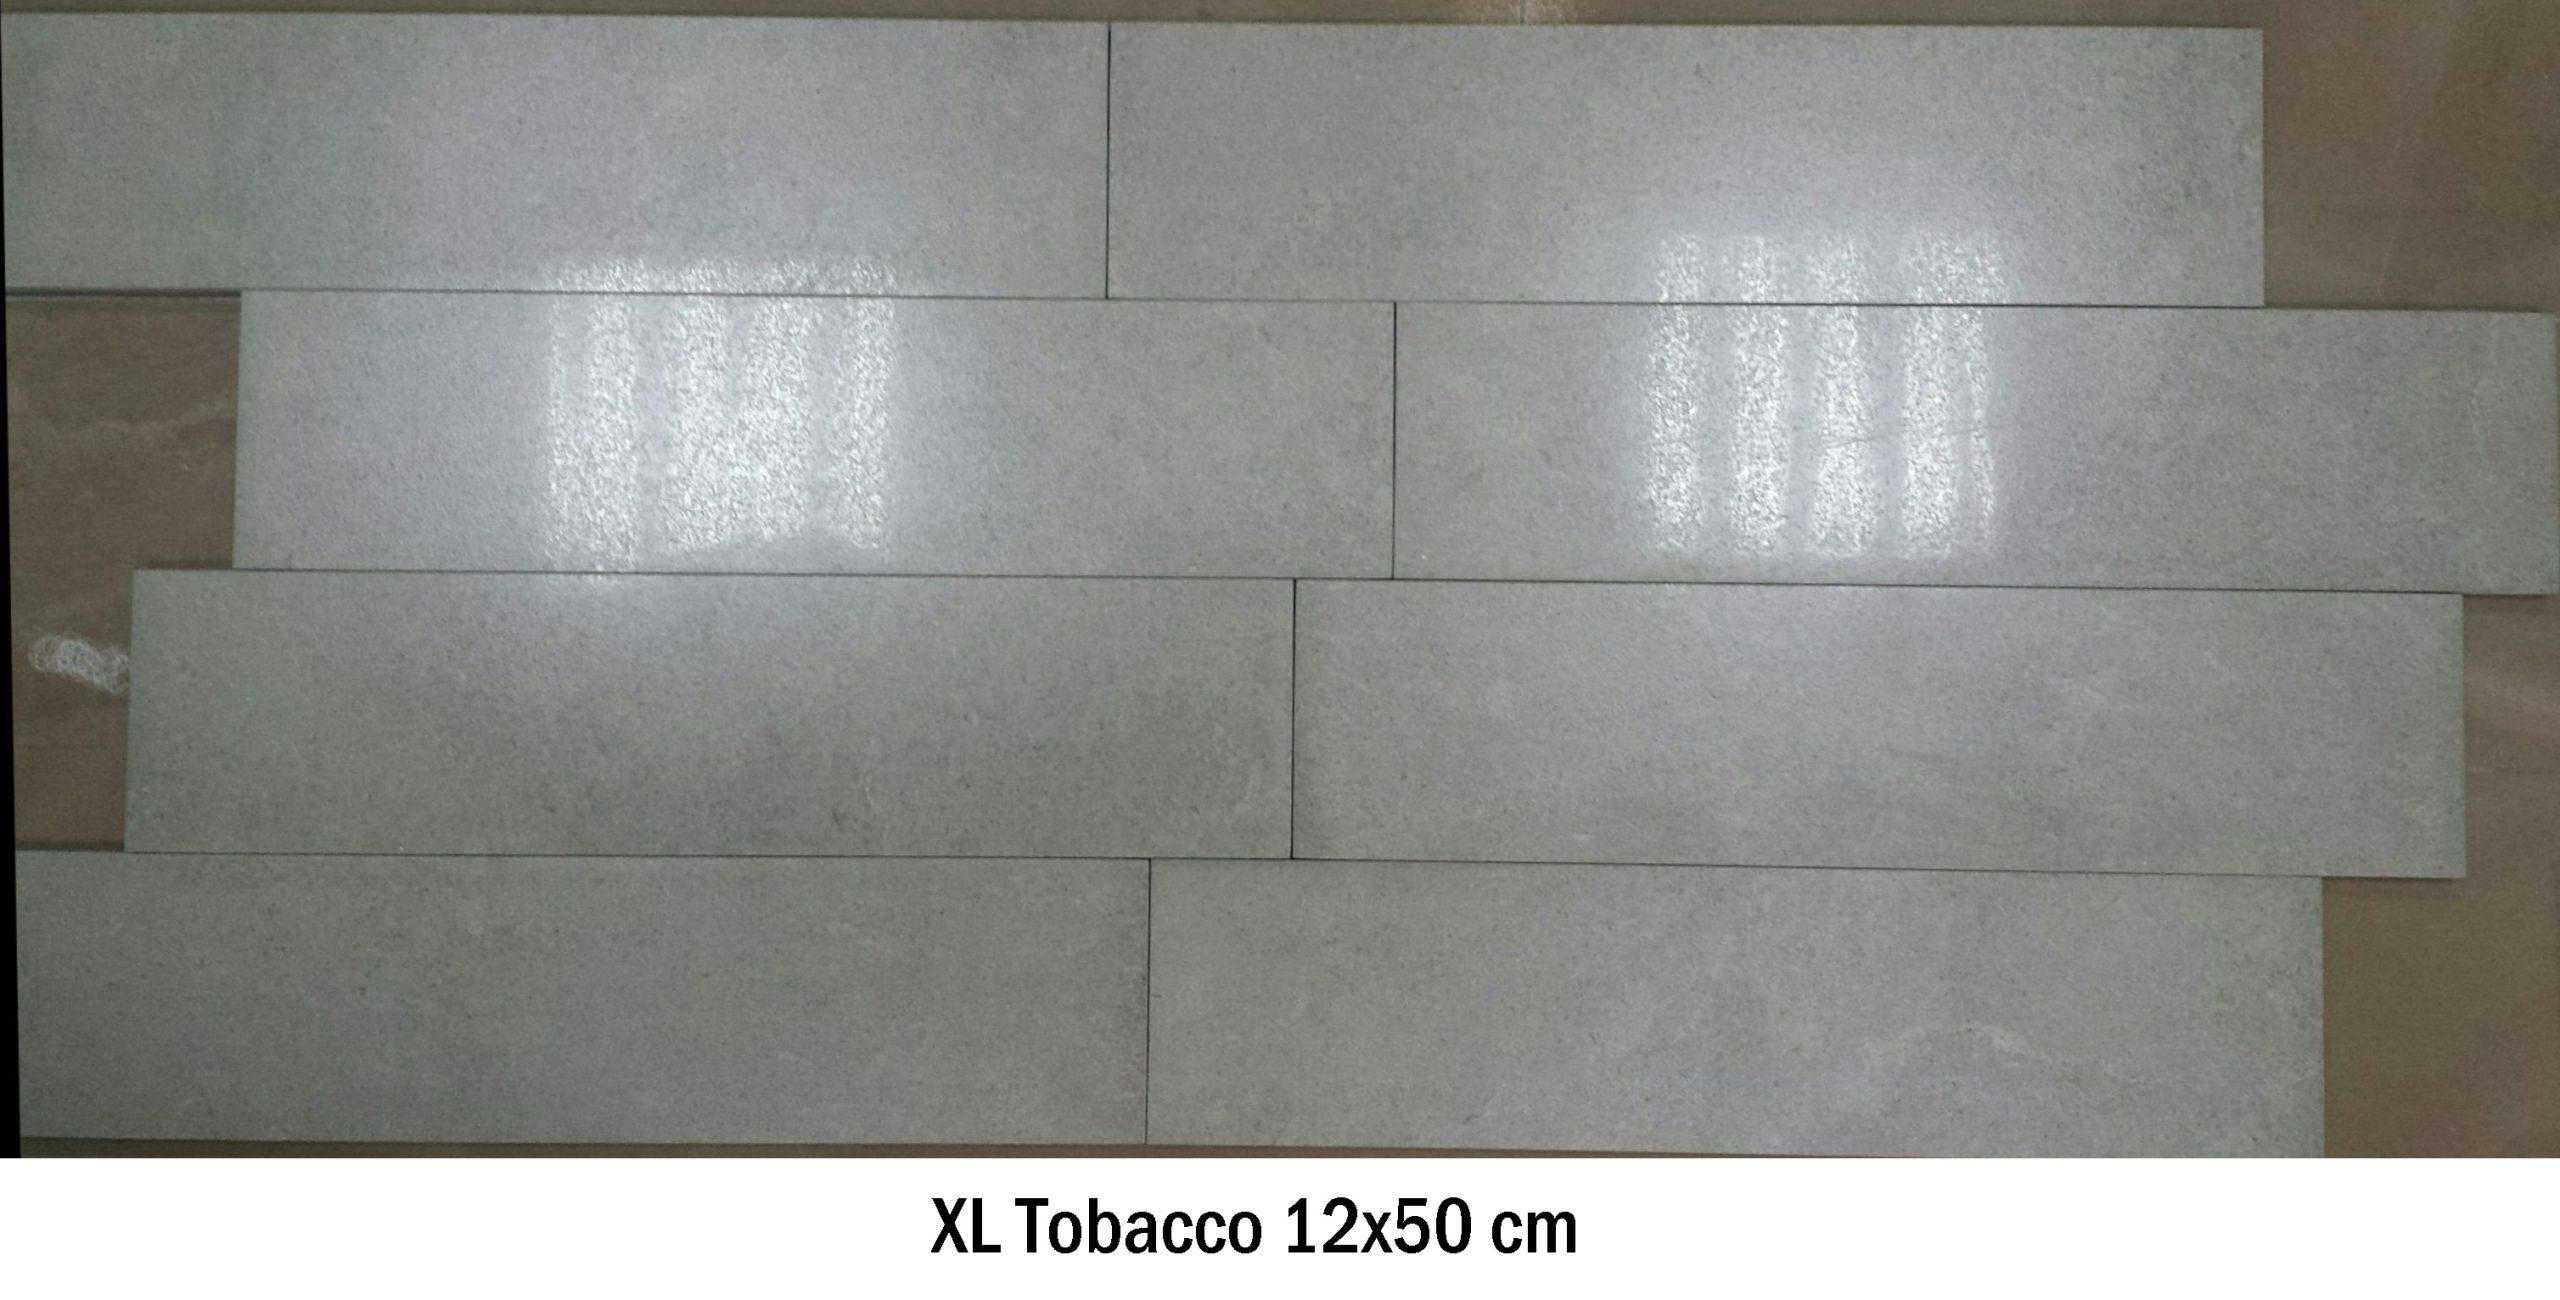 XL Tobacco 12×50 cm